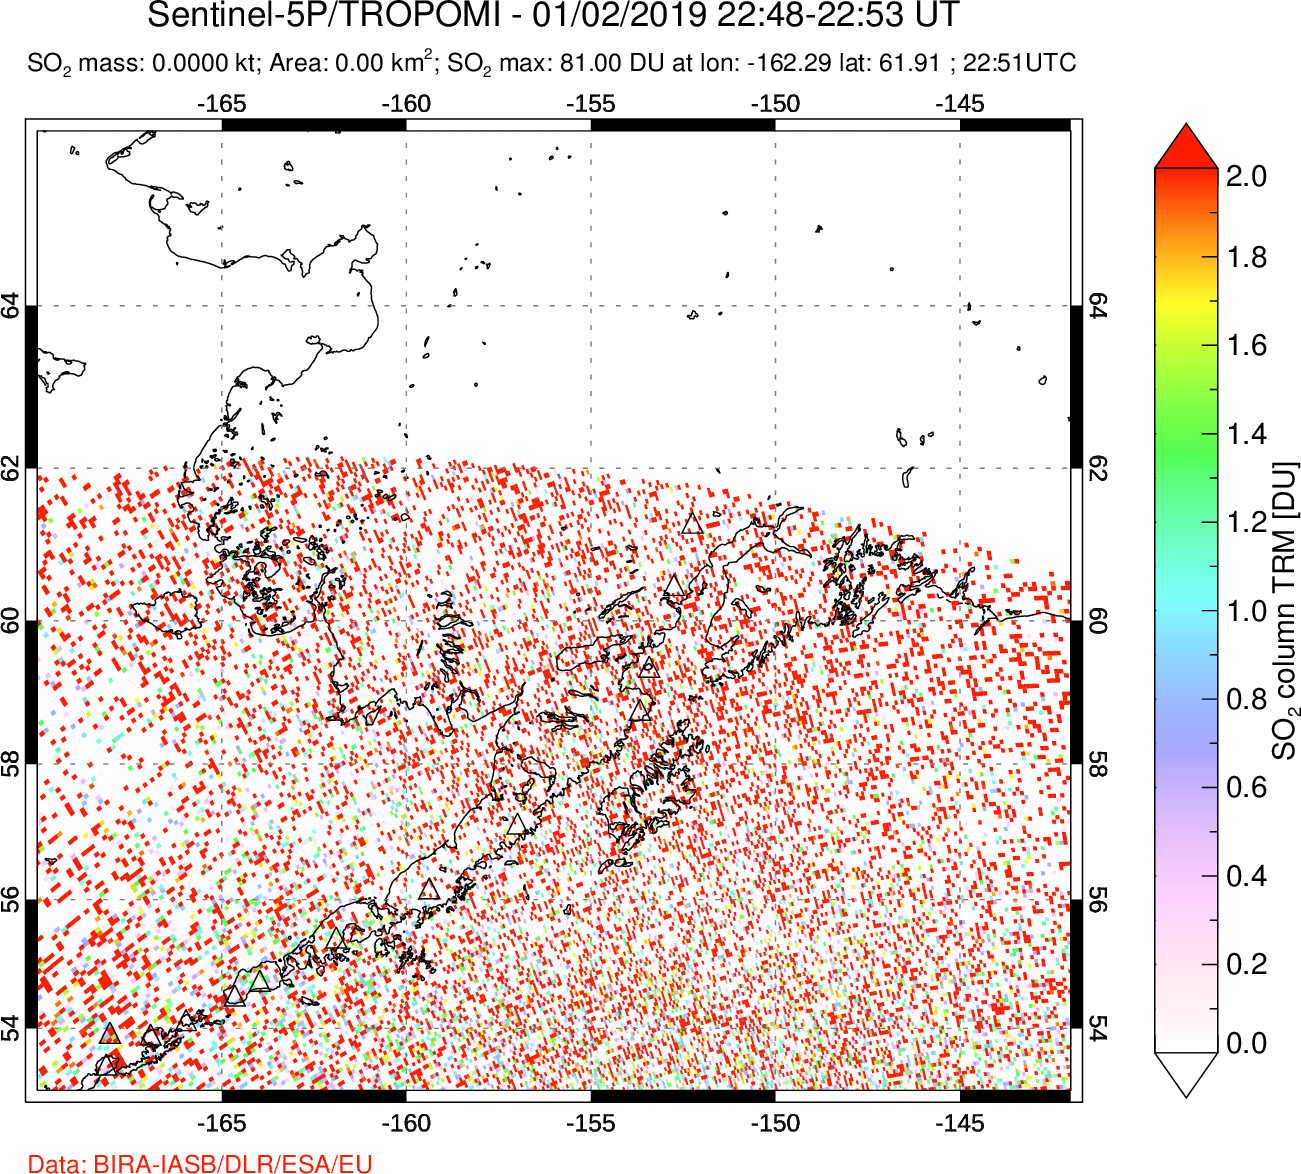 A sulfur dioxide image over Alaska, USA on Jan 02, 2019.